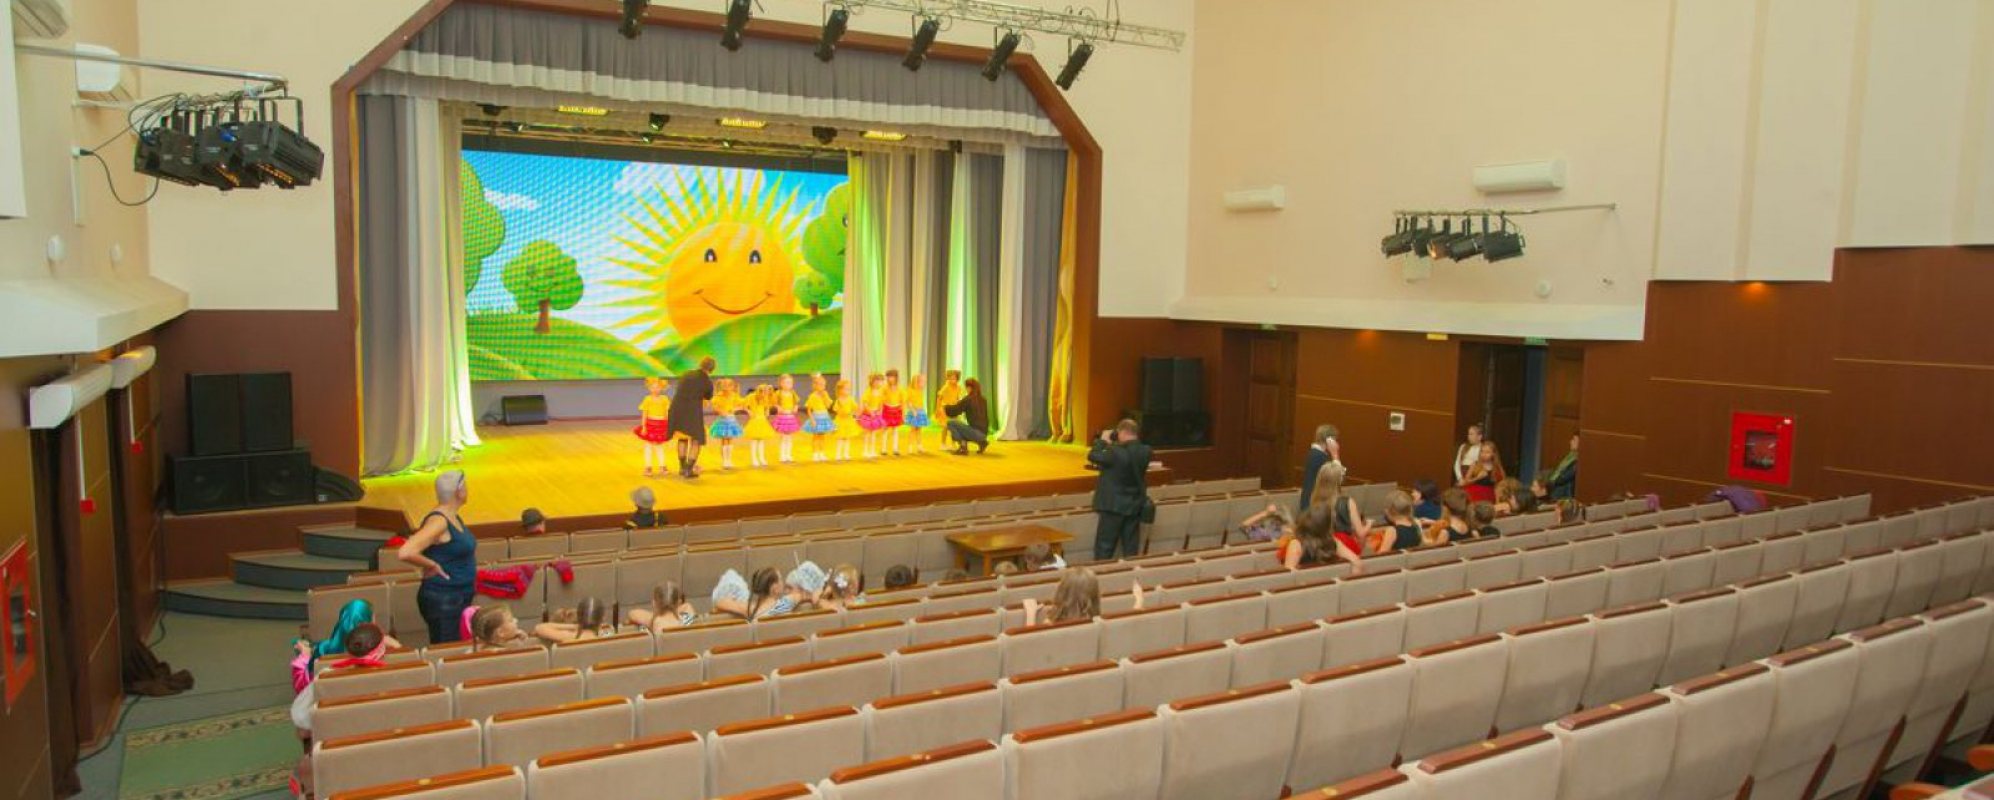 Фотографии концертного зала Зрительный зал ДК железнодорожников